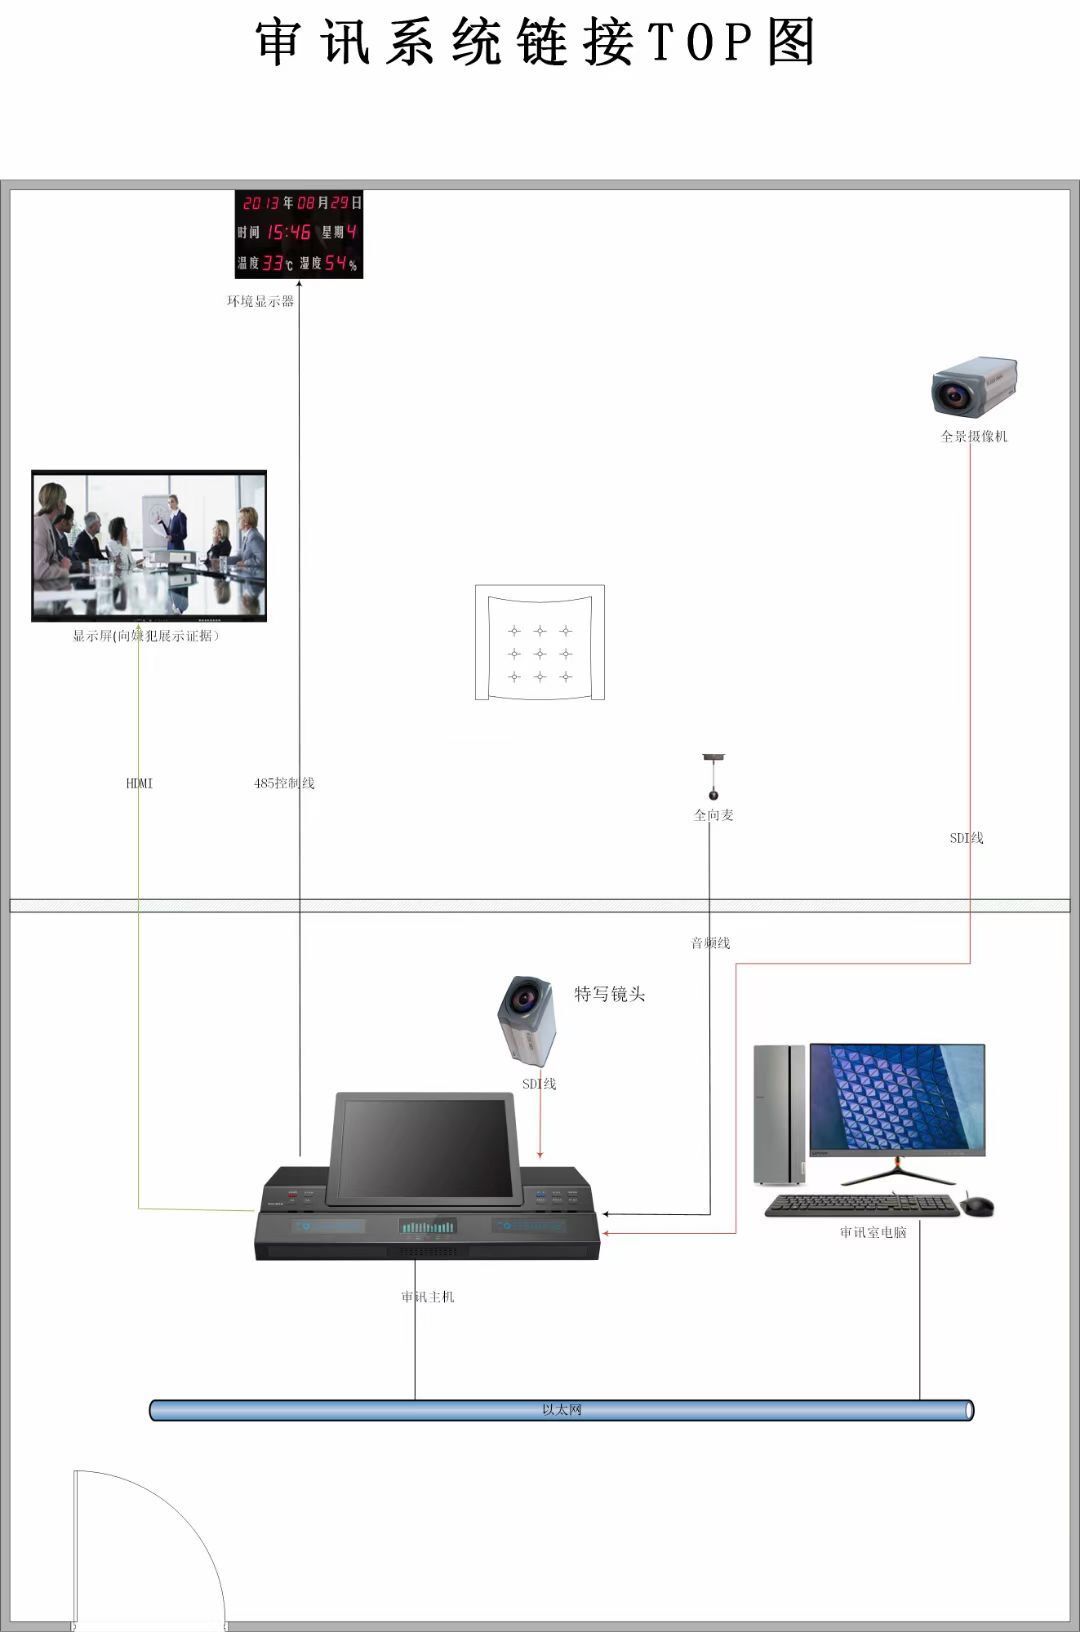 审讯系统链接图-IP安全摄像头网络监控